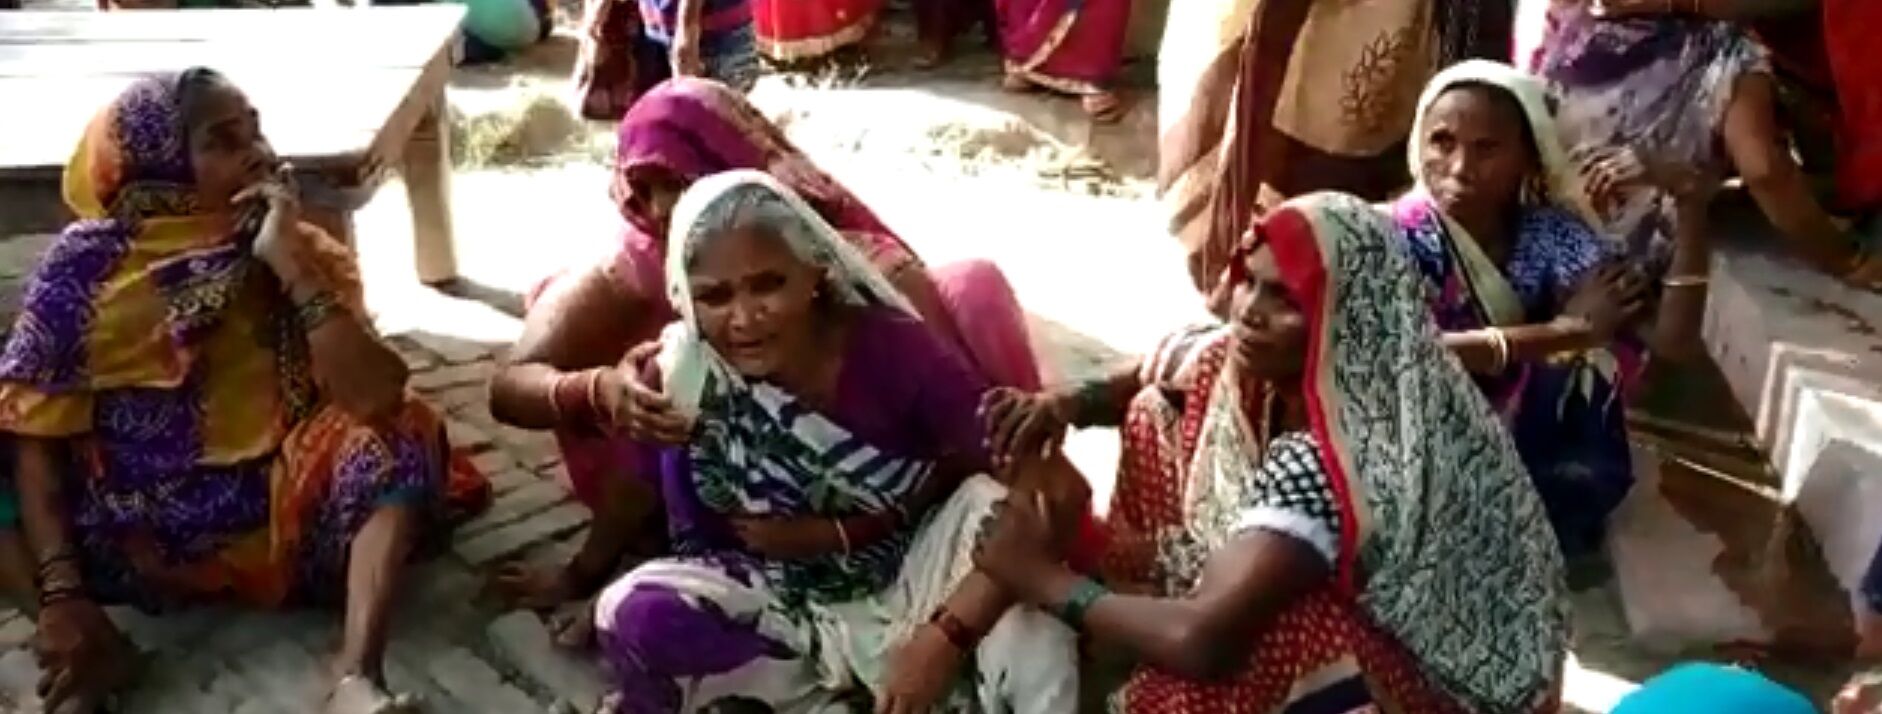 प्रतापगढः खेत की रखवाली कर रहे किसान को बदमाशों ने जिंदा जलाया